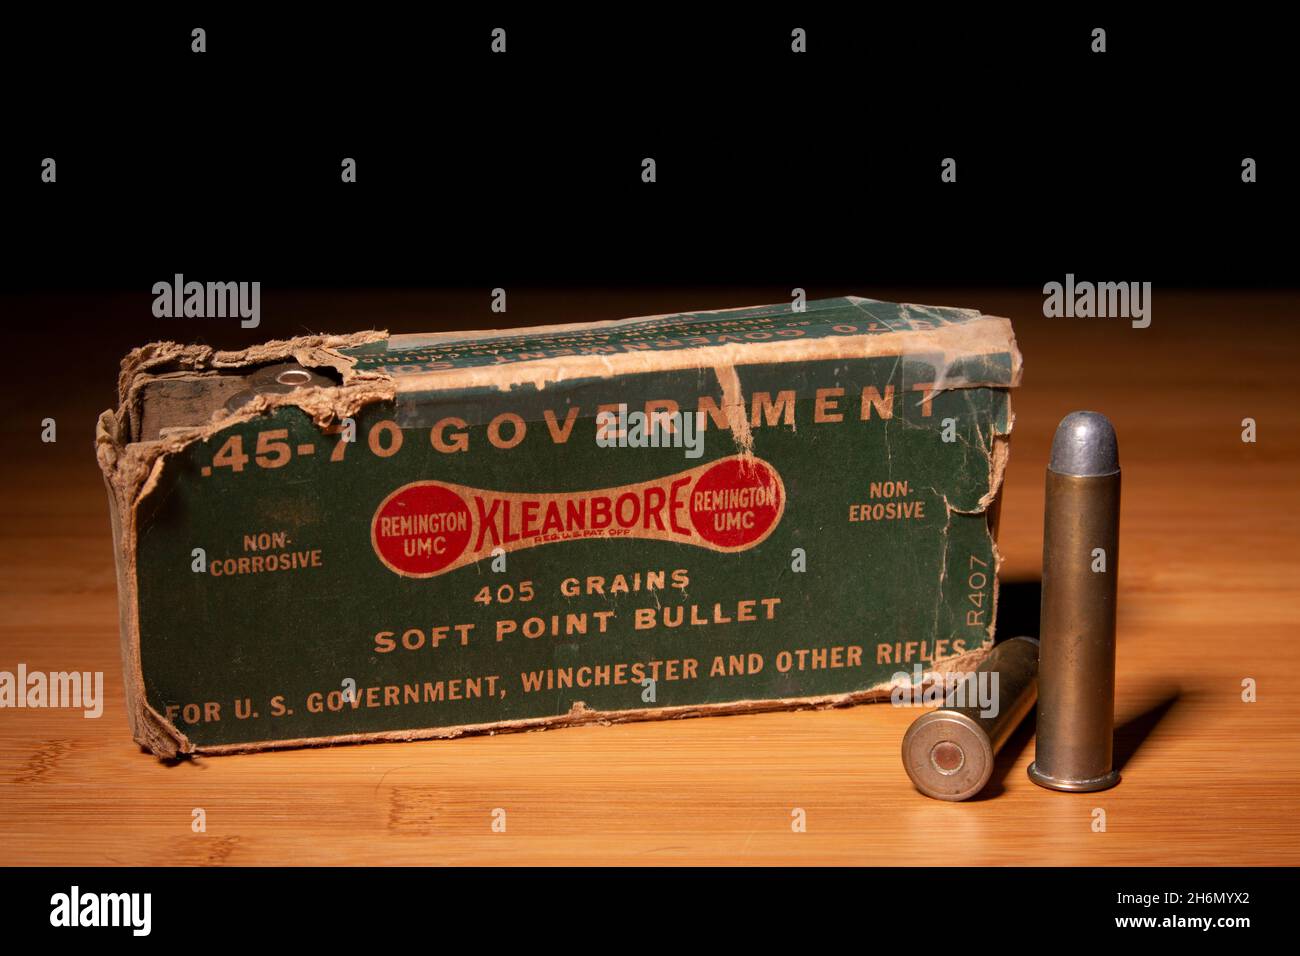 .45-70 Governo Remington UMC Kleanbore munizioni Foto Stock